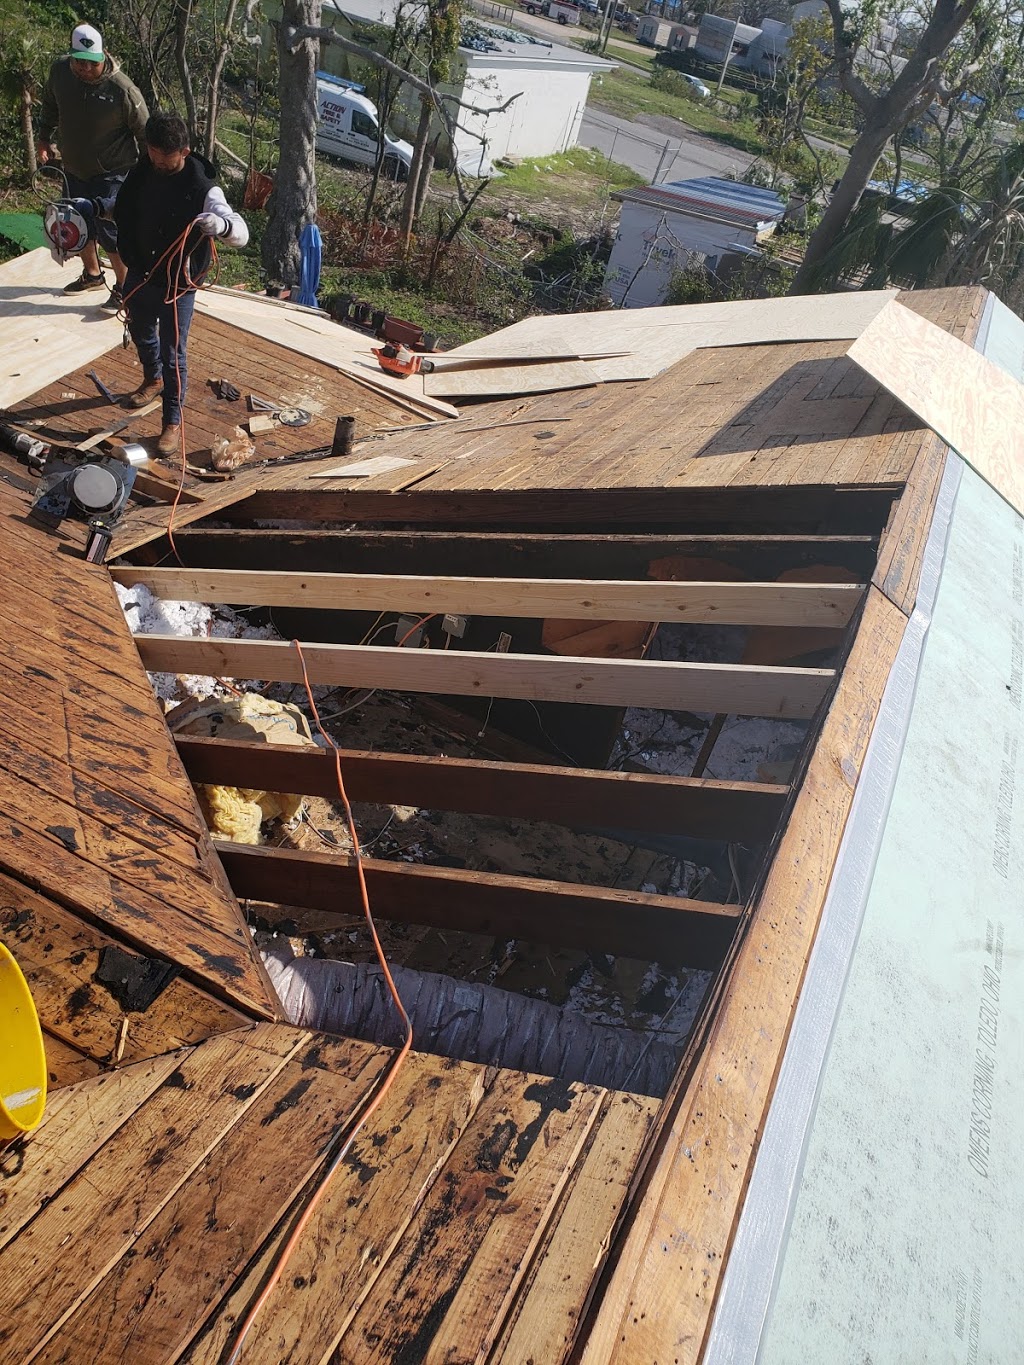 Restoration Colorado Roofing | 1950 Victor Pl #140, Colorado Springs, CO 80915 | Phone: (719) 635-7310